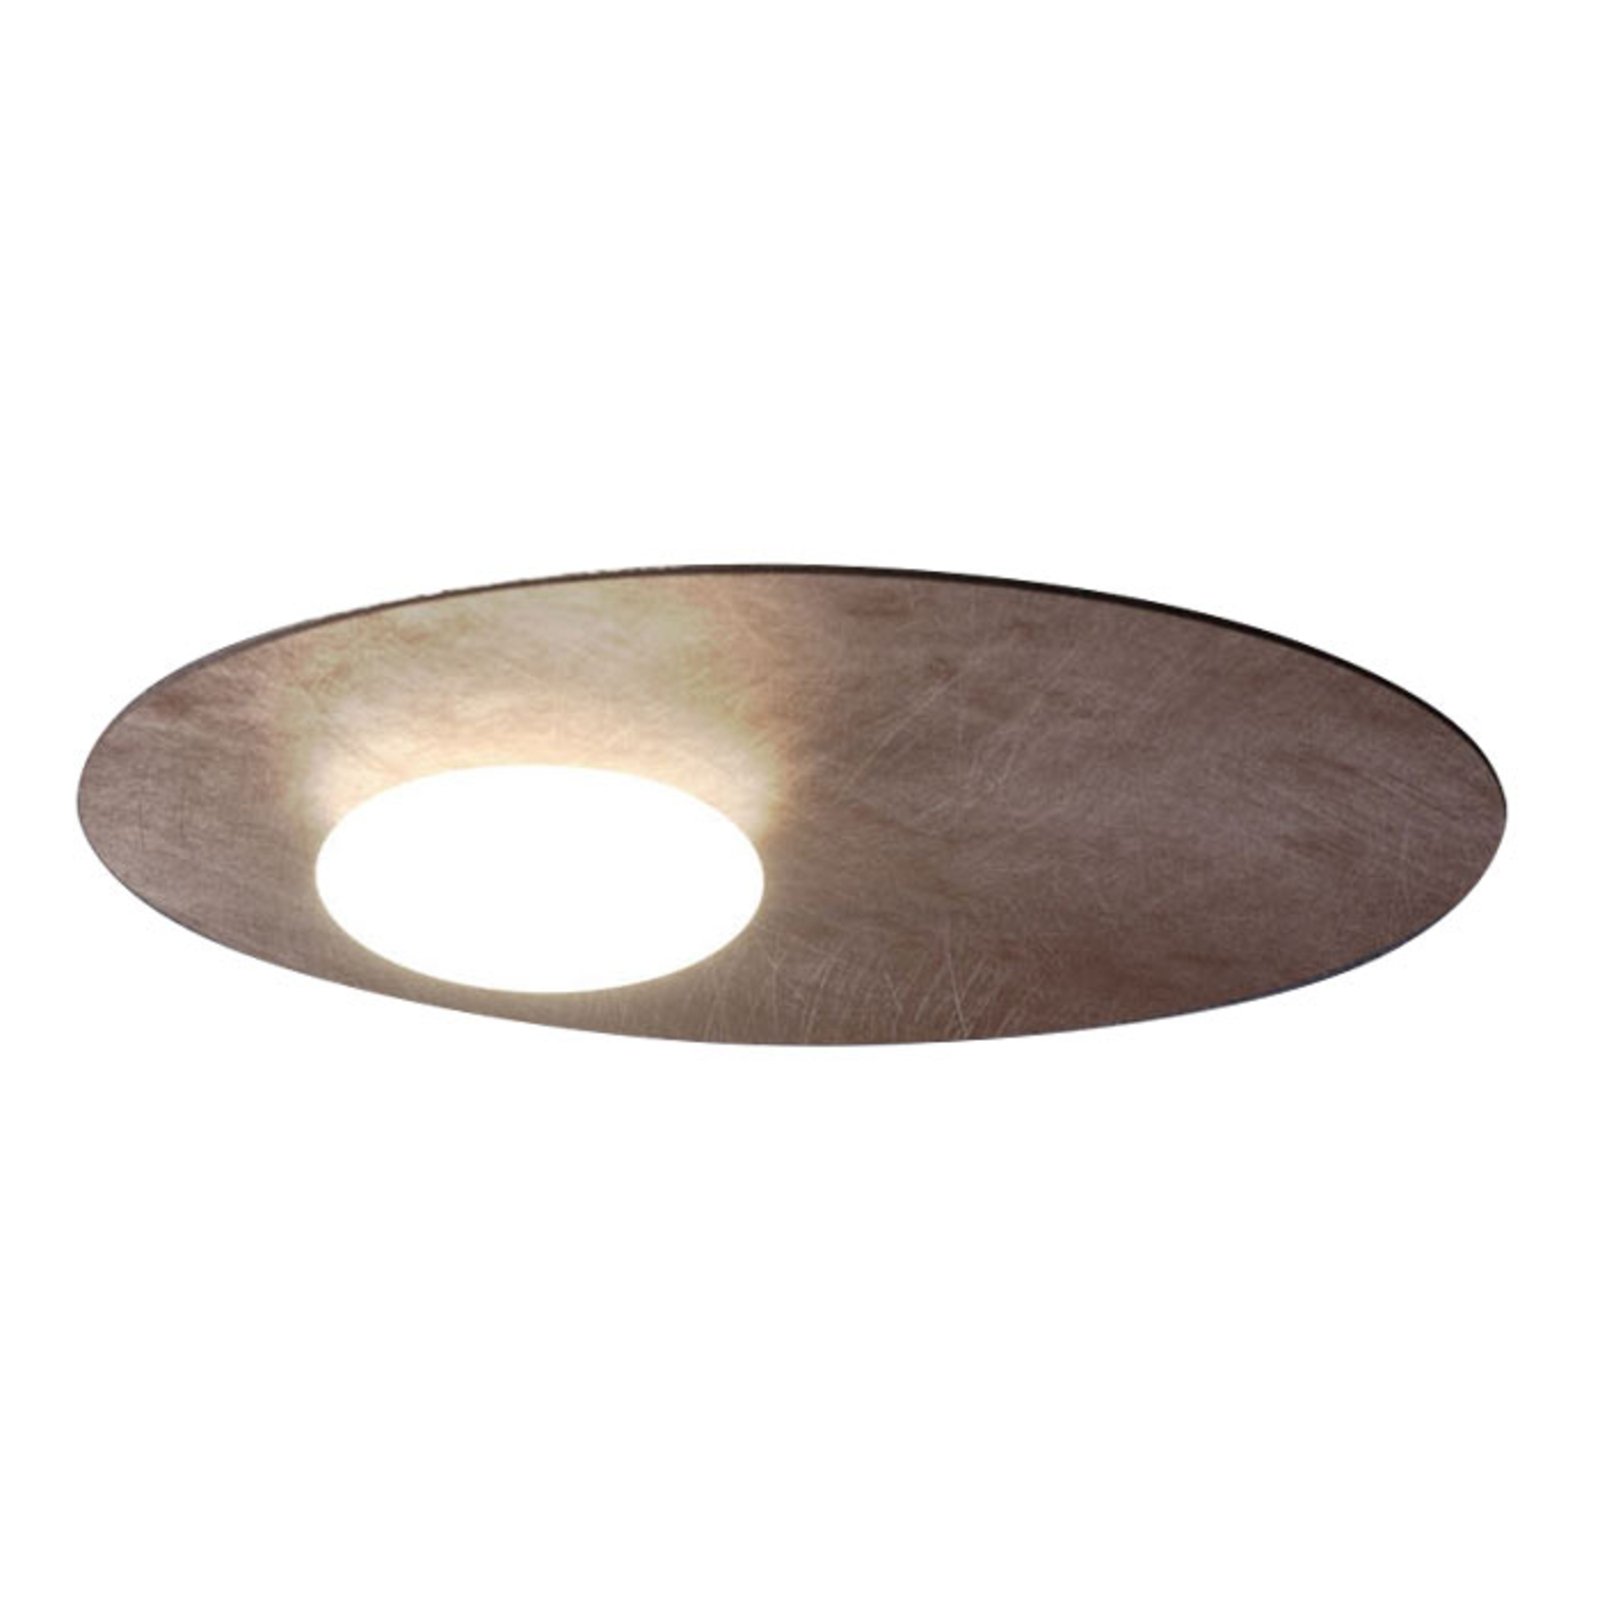 Axolight Kwic LED ceiling light, bronze Ø 48 cm